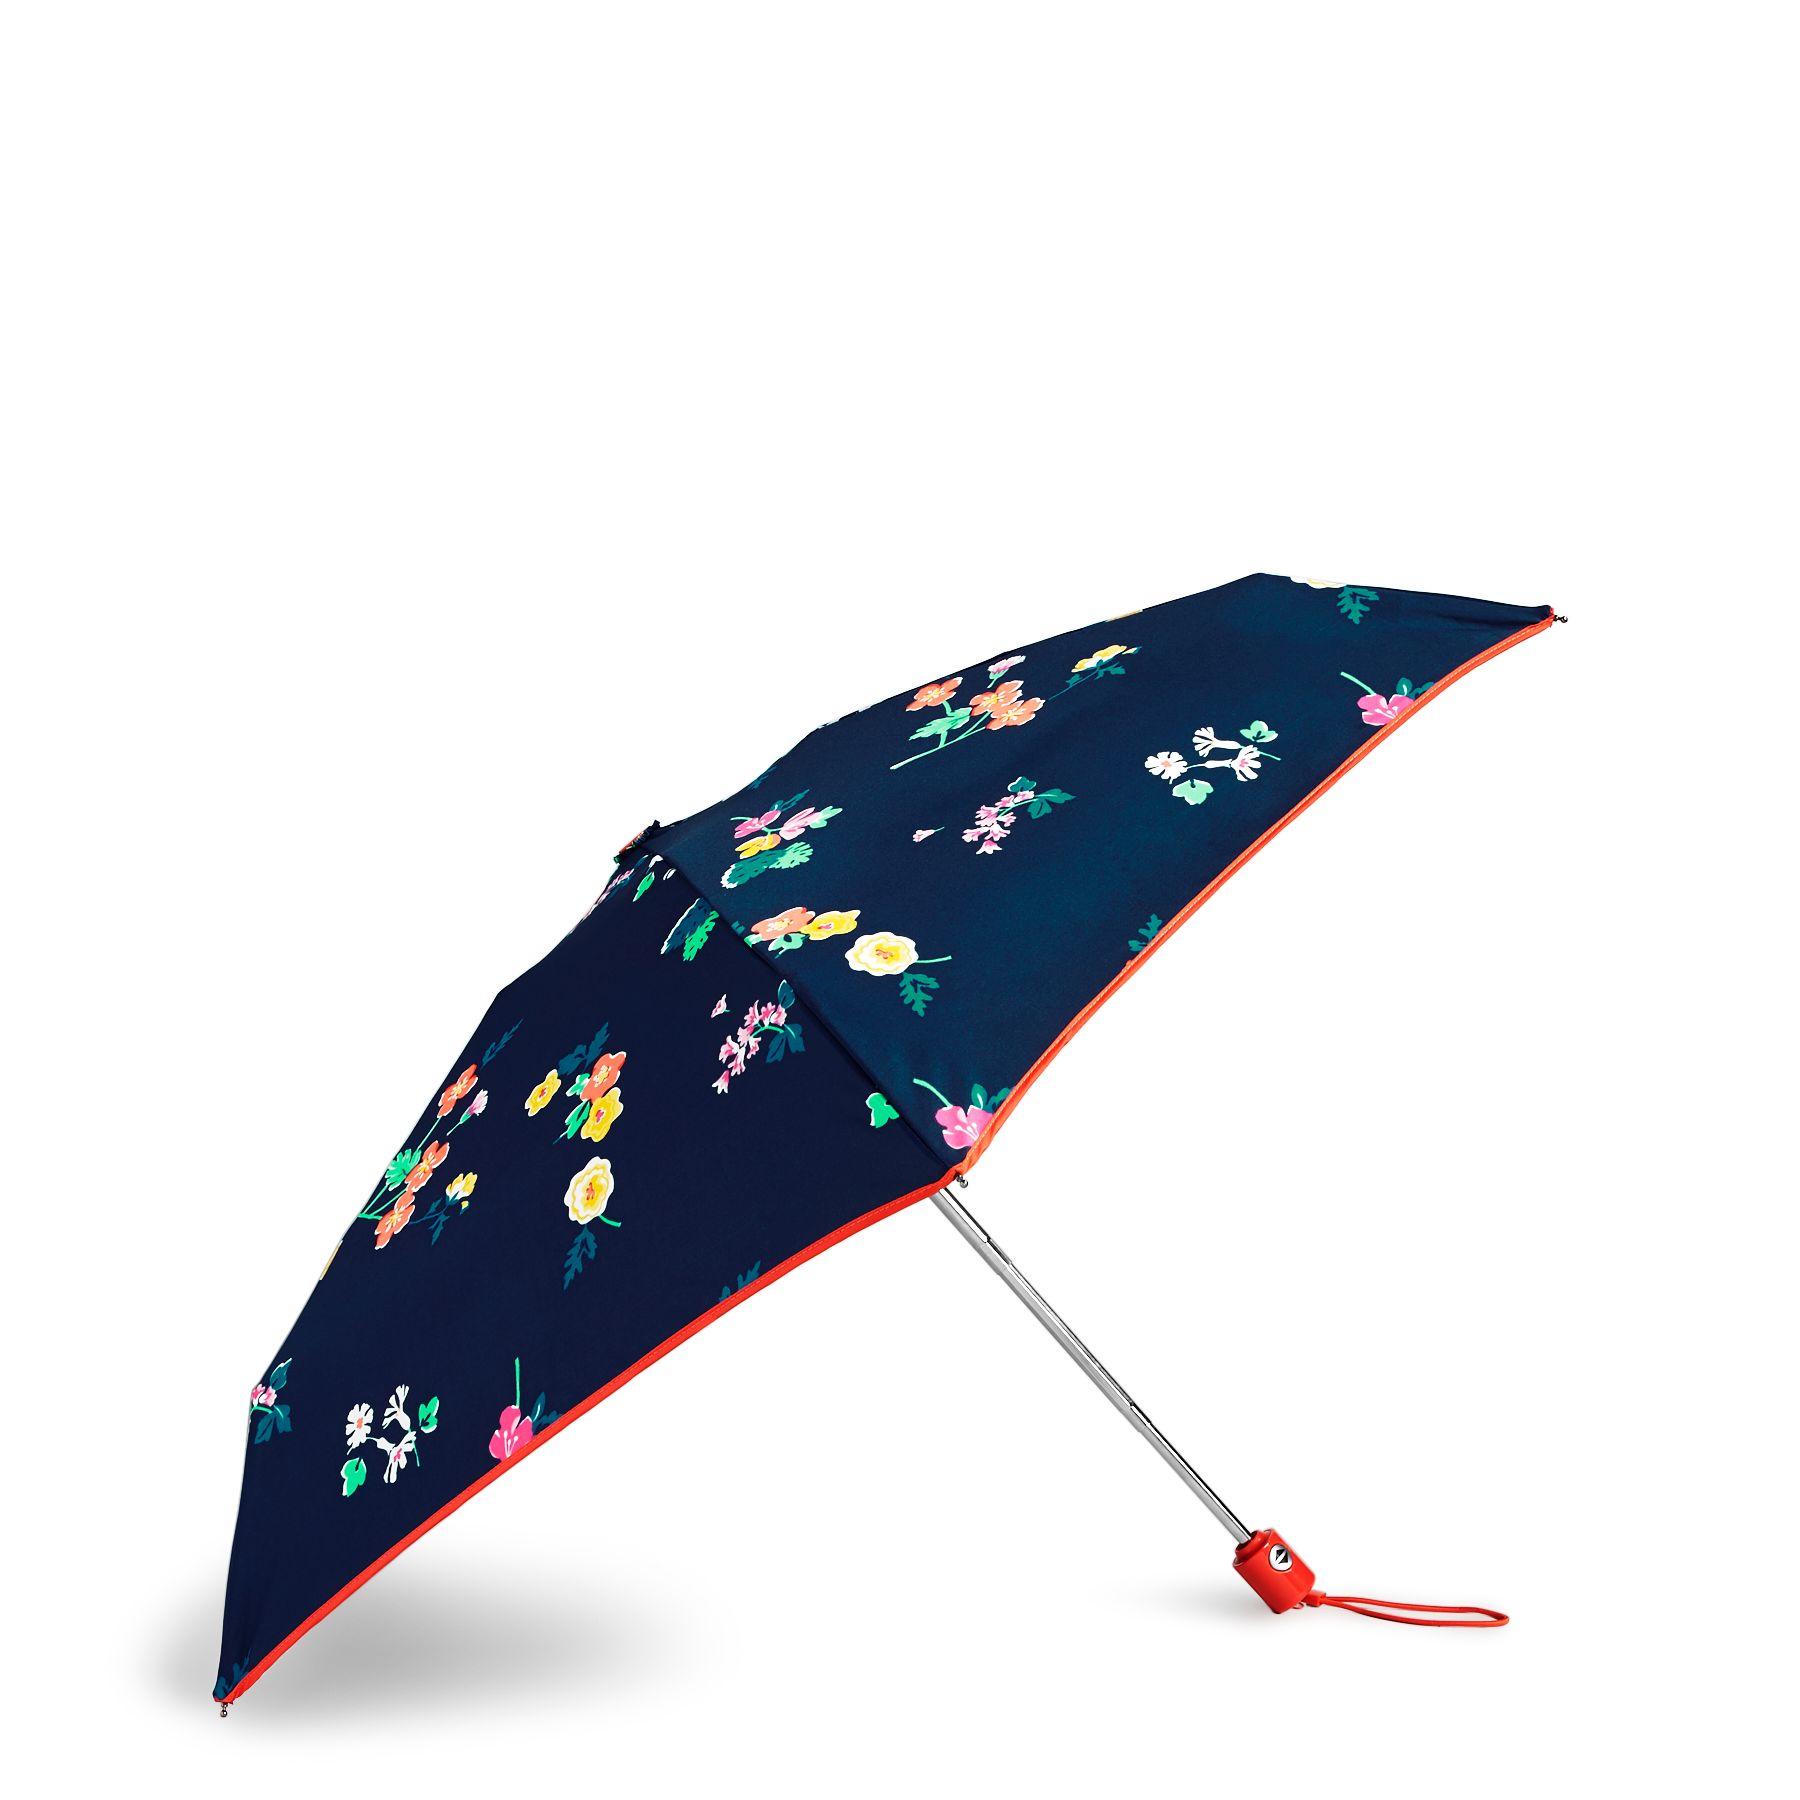 Vera Bradley Automatic Mini Umbrella in Santiago FloralOther Fashion Accessories